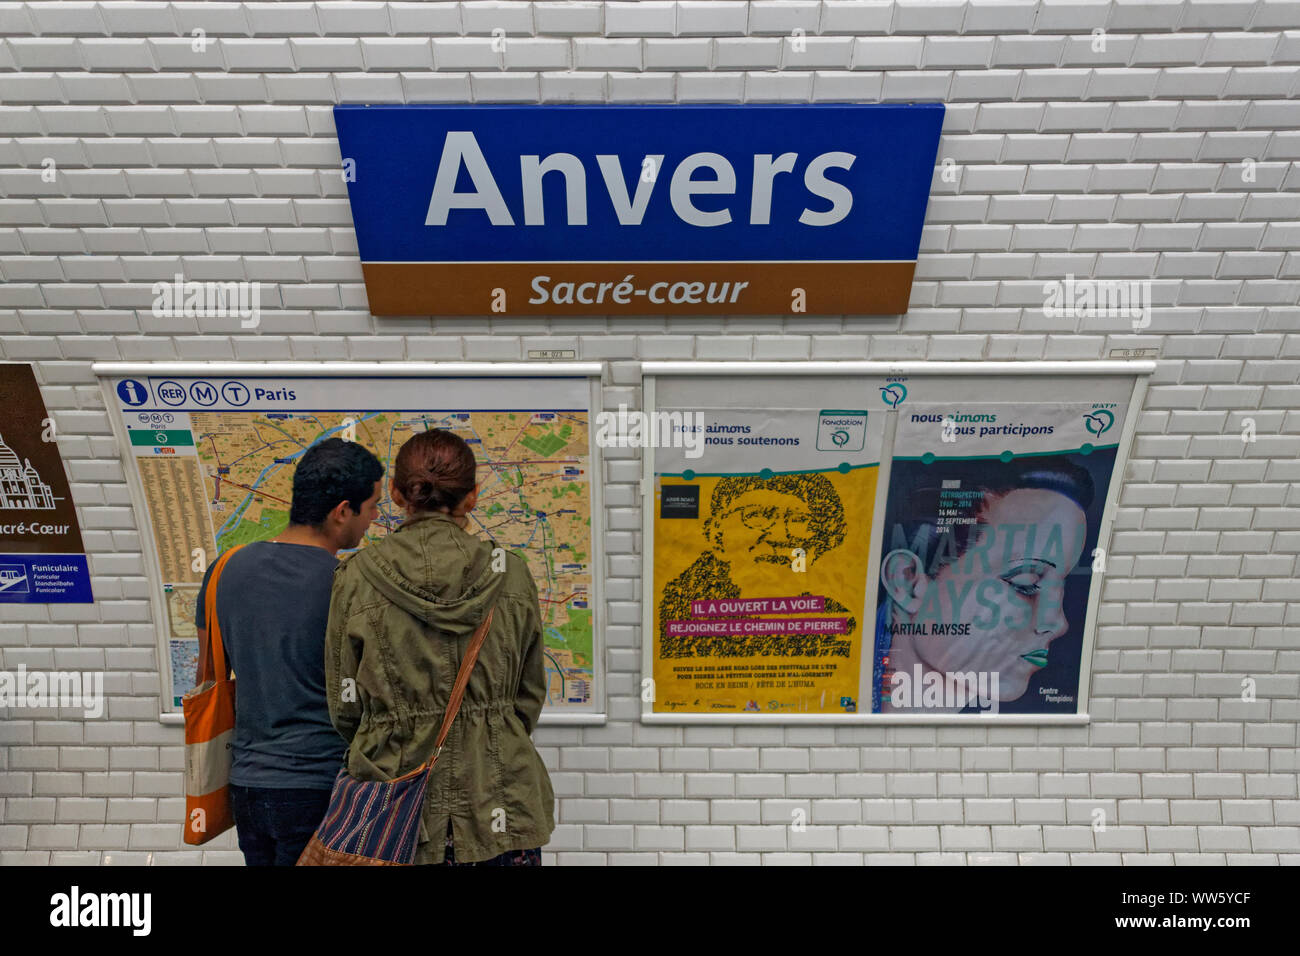 France, Paris, man, woman, metro route map, advertisement, station sign, Anvers, SacrÃ©-CÅ“ur Stock Photo